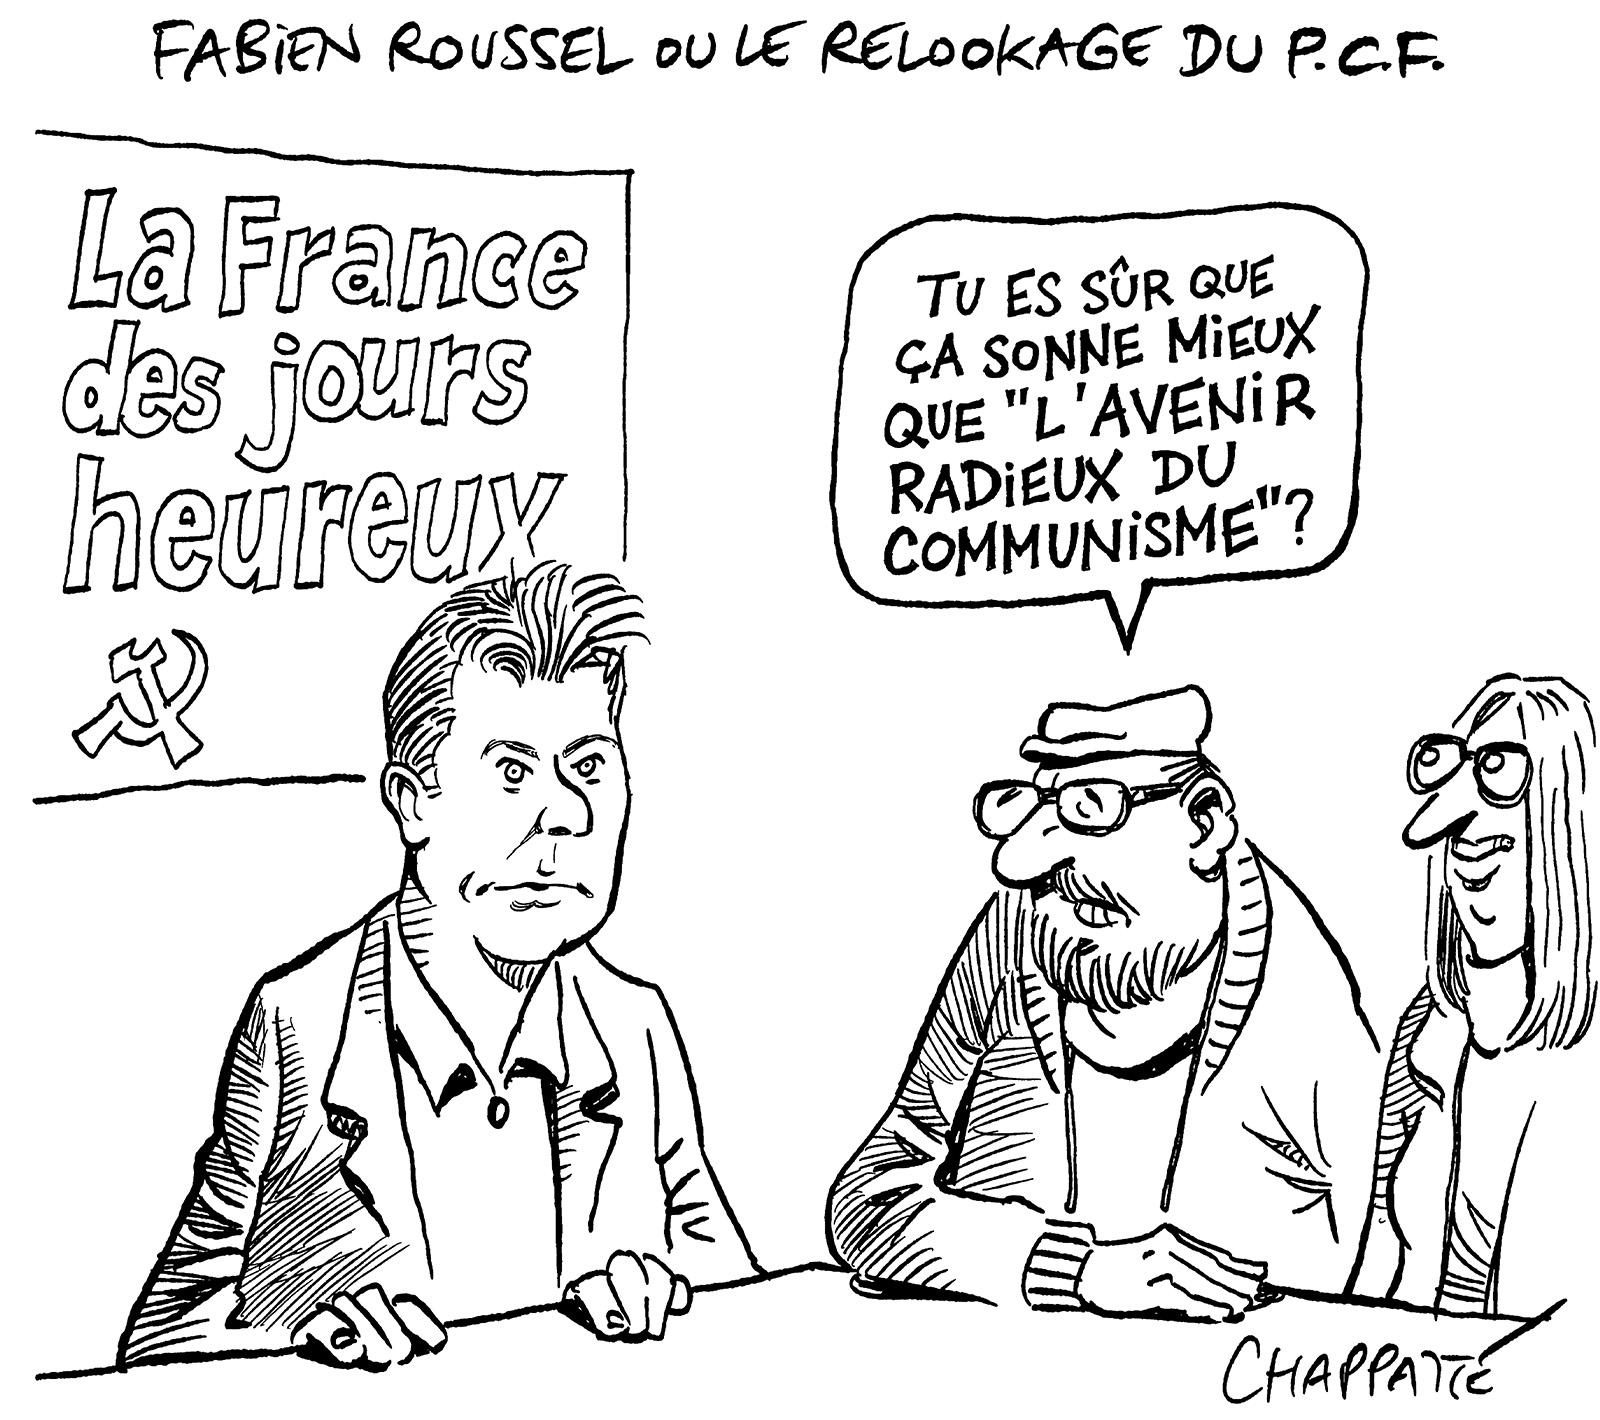 Fabien Roussel, le relookage du PCF